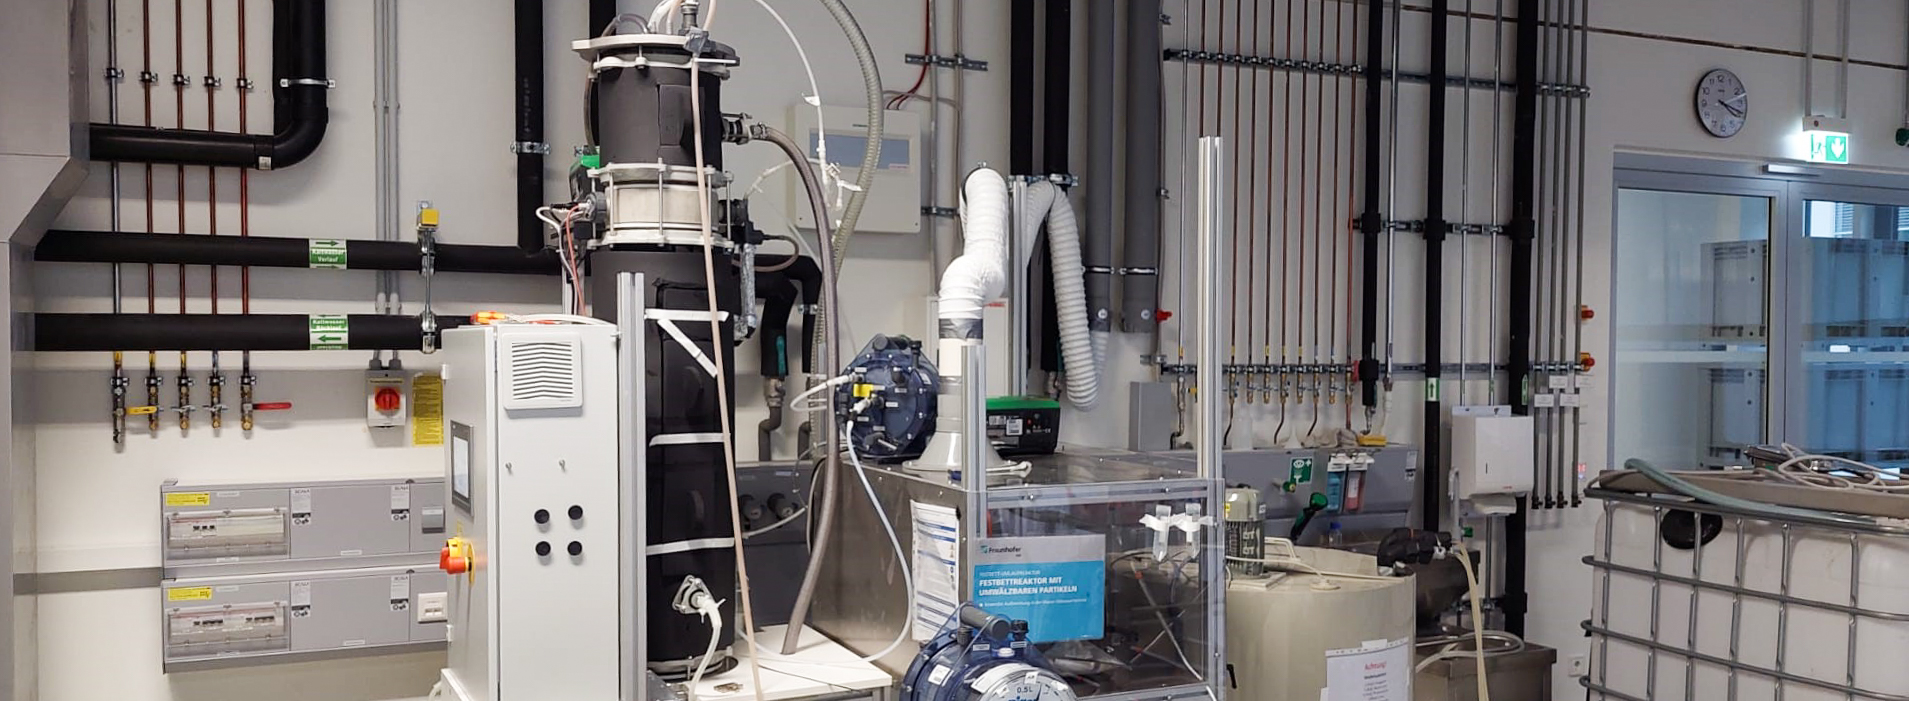 Methanogene Stufe einer anaeroben Biogasanlage mit Festbett-Umlaufreaktor.